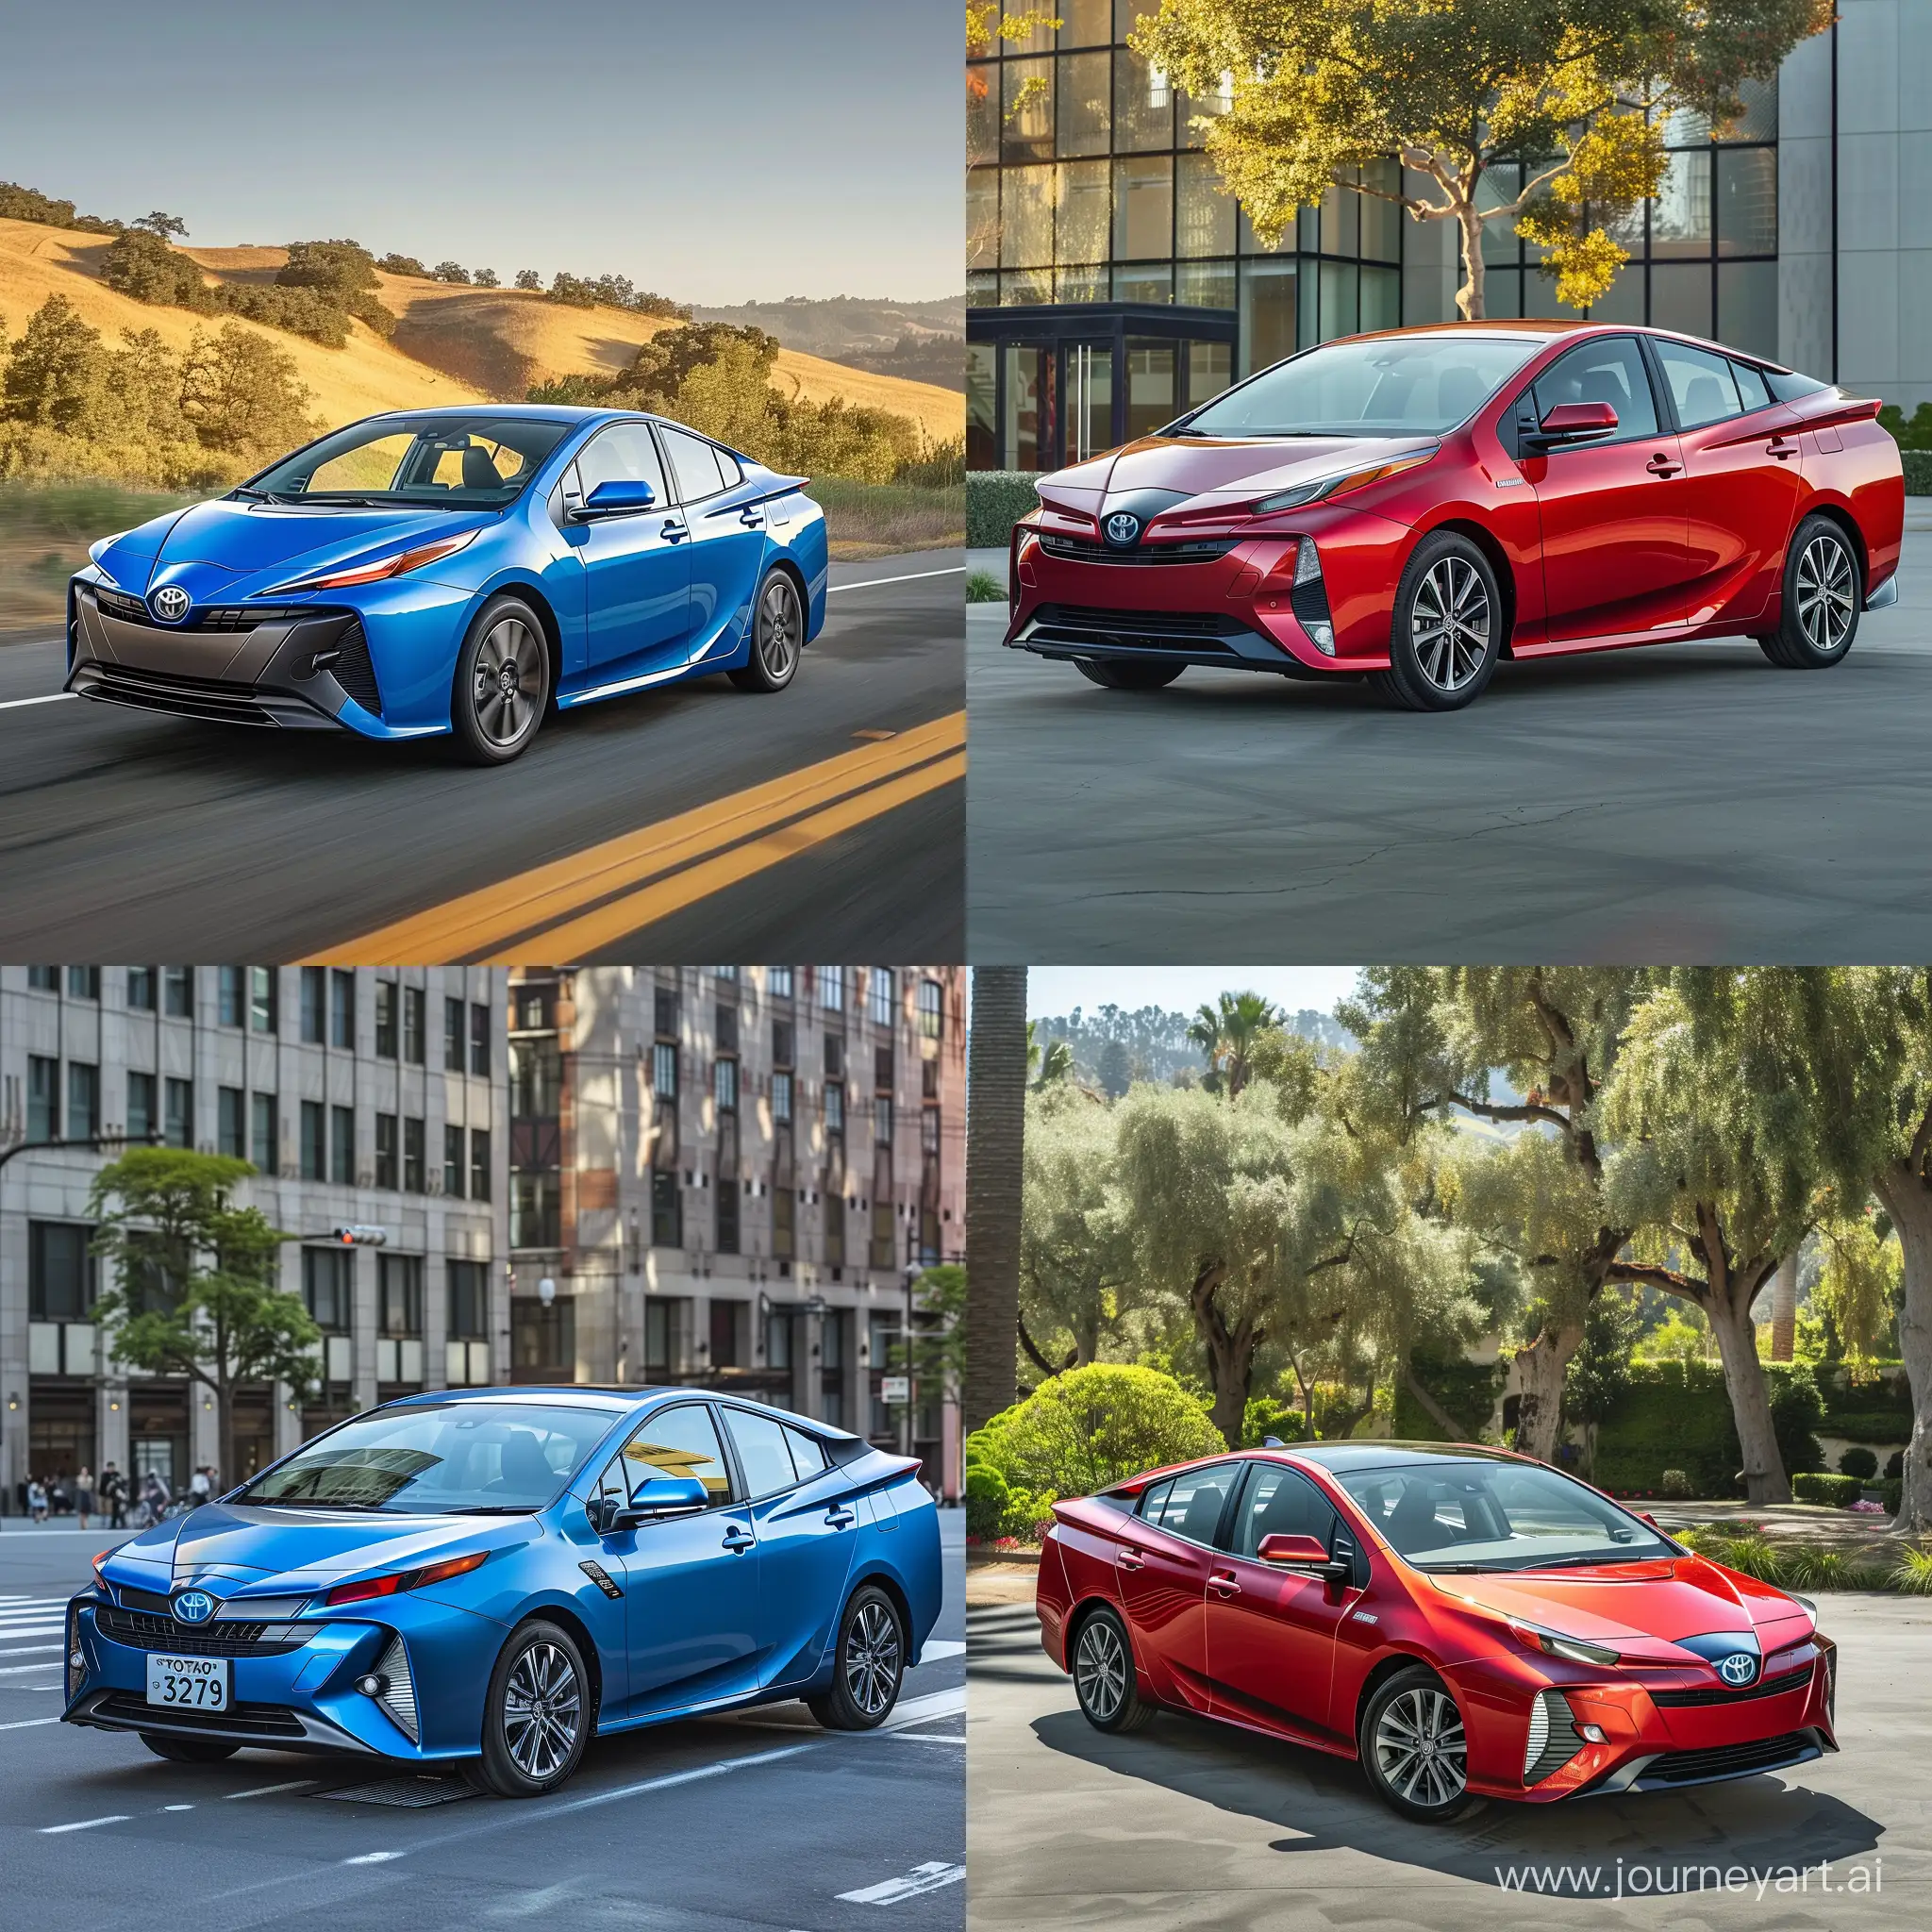 Toyota-Prius-2023-Electric-Green-Car-in-Urban-Setting